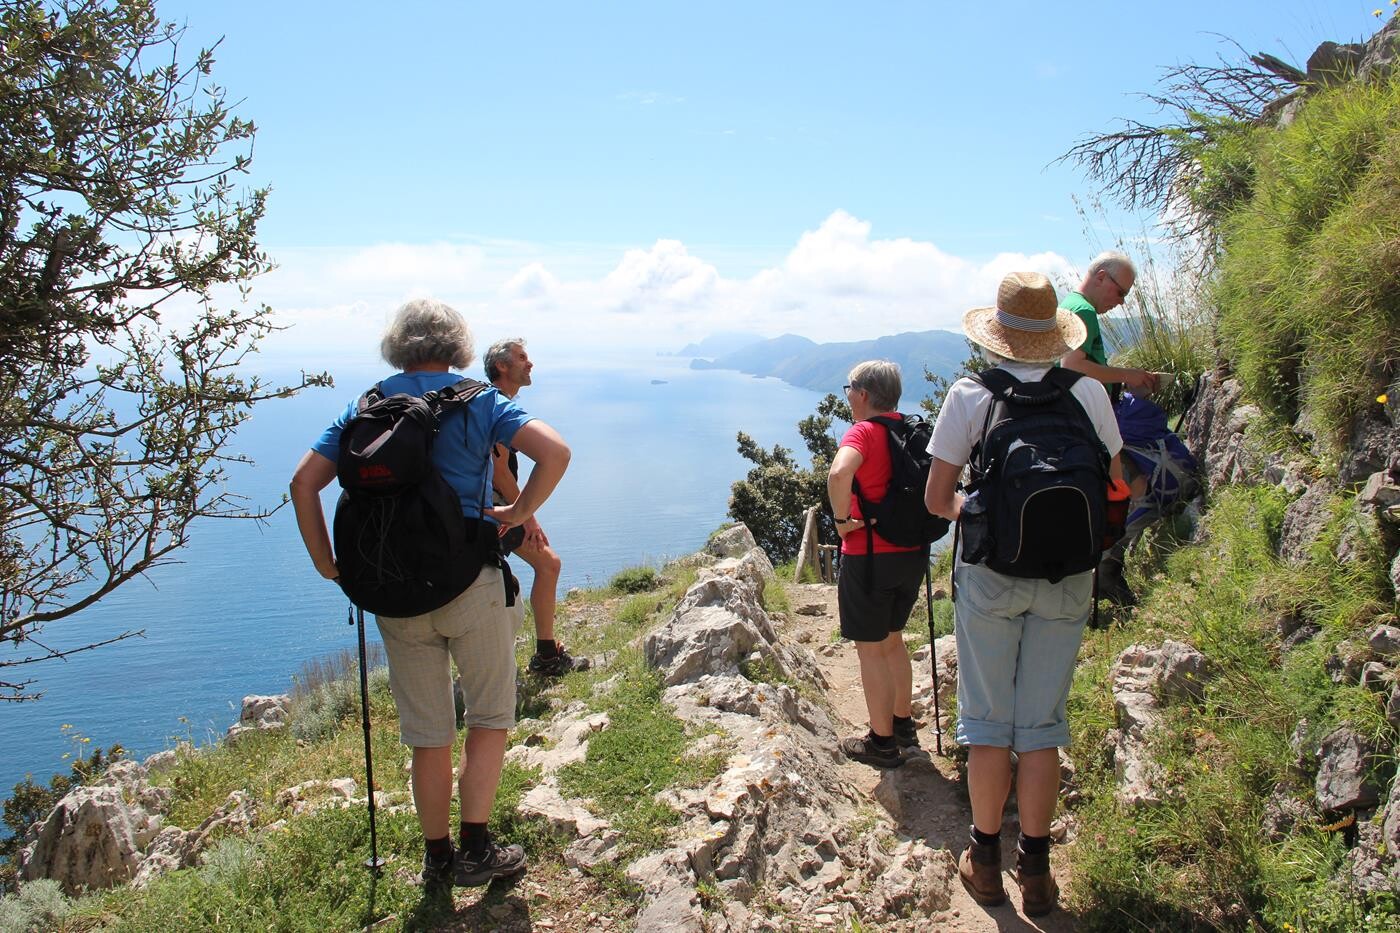 Gruppe af vandrere nyder udsigt over kyst ved Amalfi.